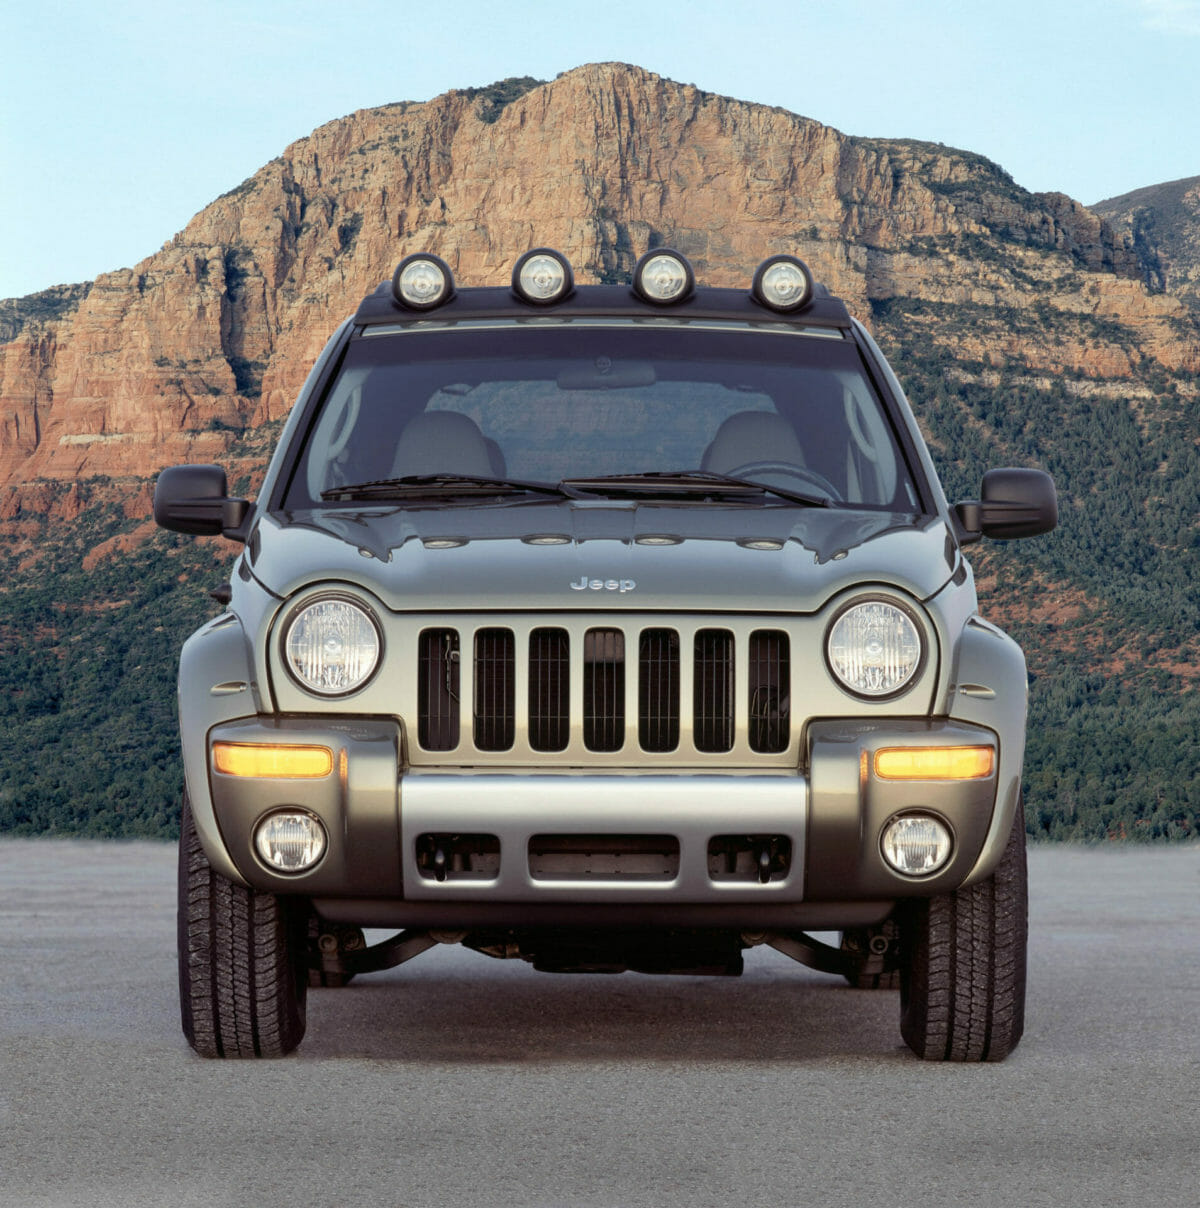 2003 Jeep Liberty - Foto de Jeep